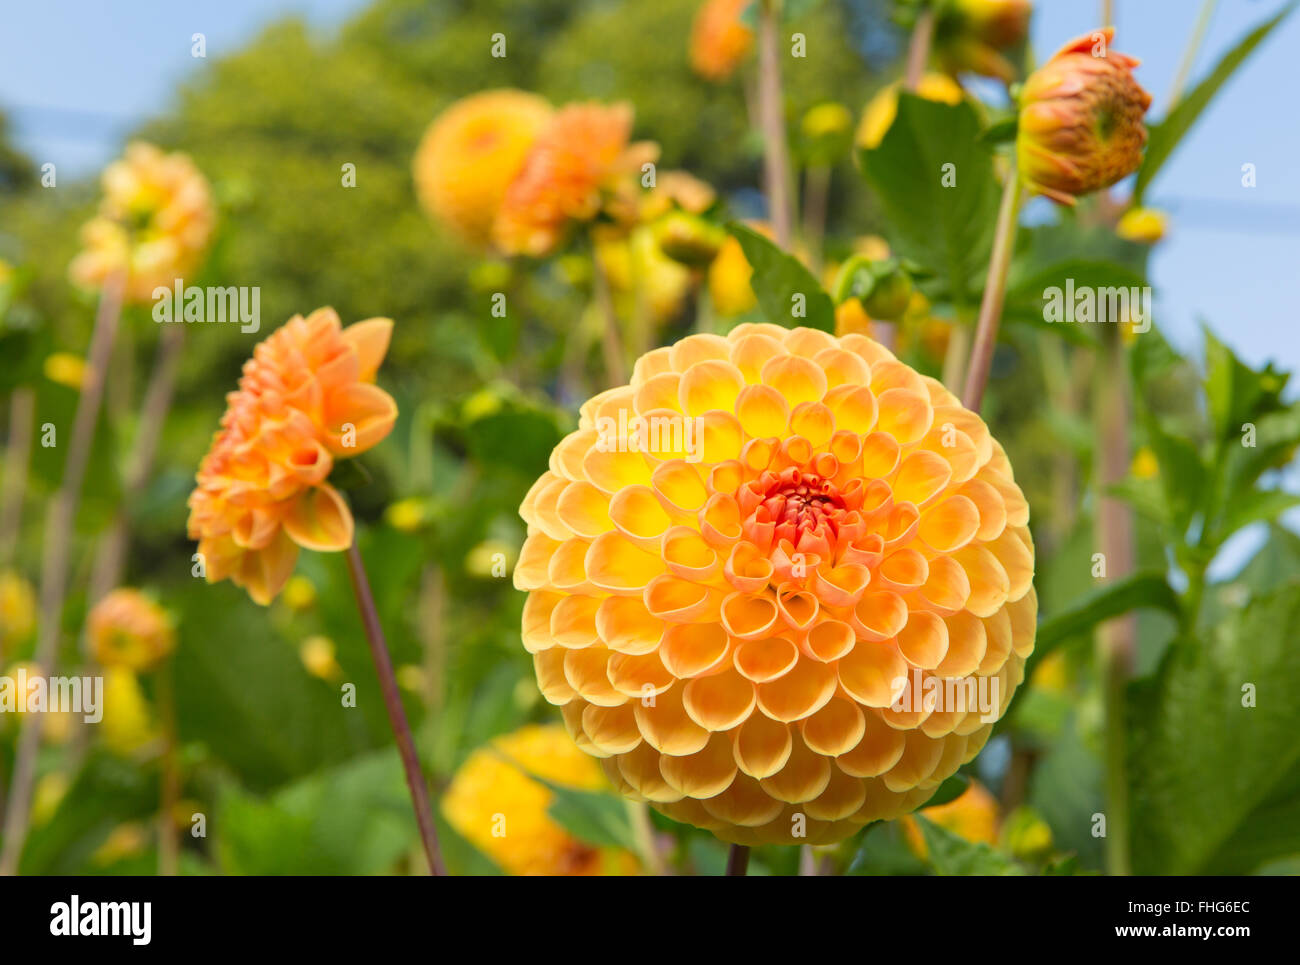 Dahlia ryecroft delight yellow flower round bloom in a garden Stock Photo